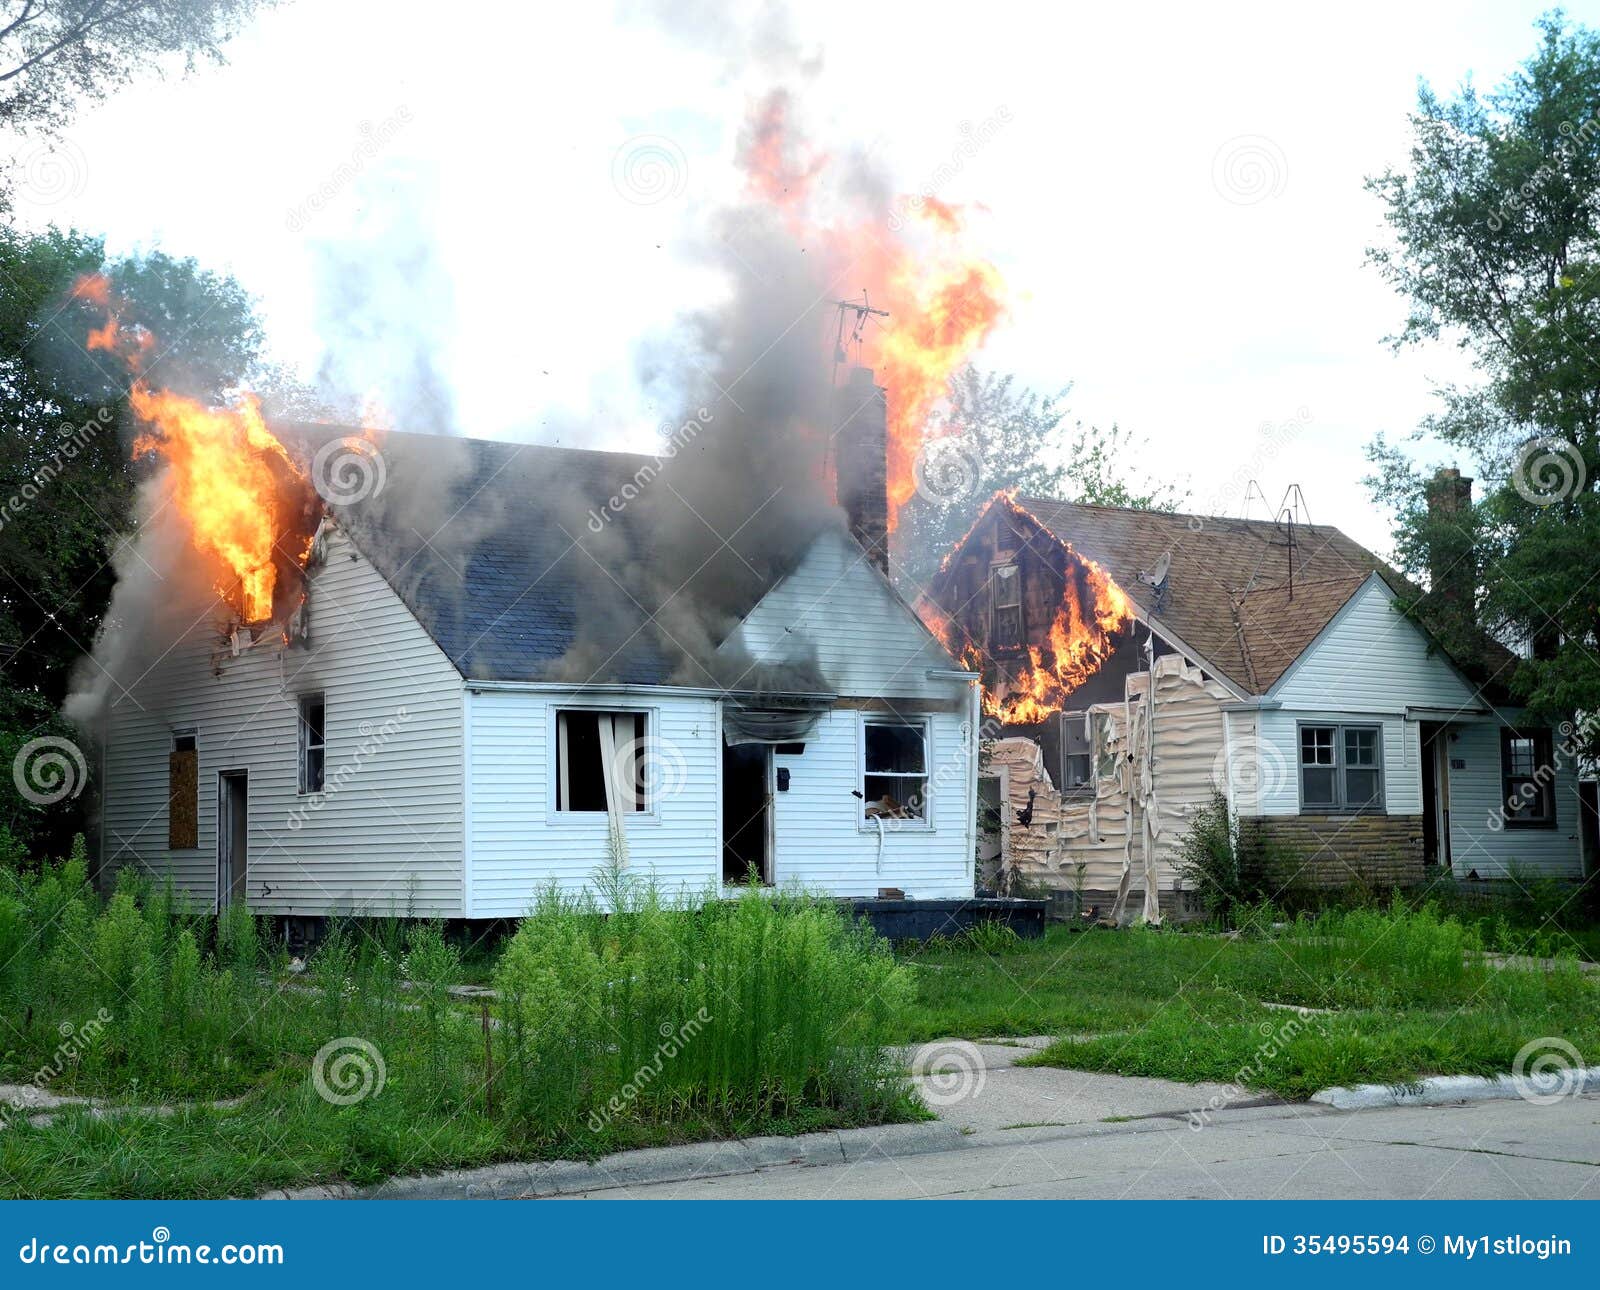 free clipart burning house - photo #35